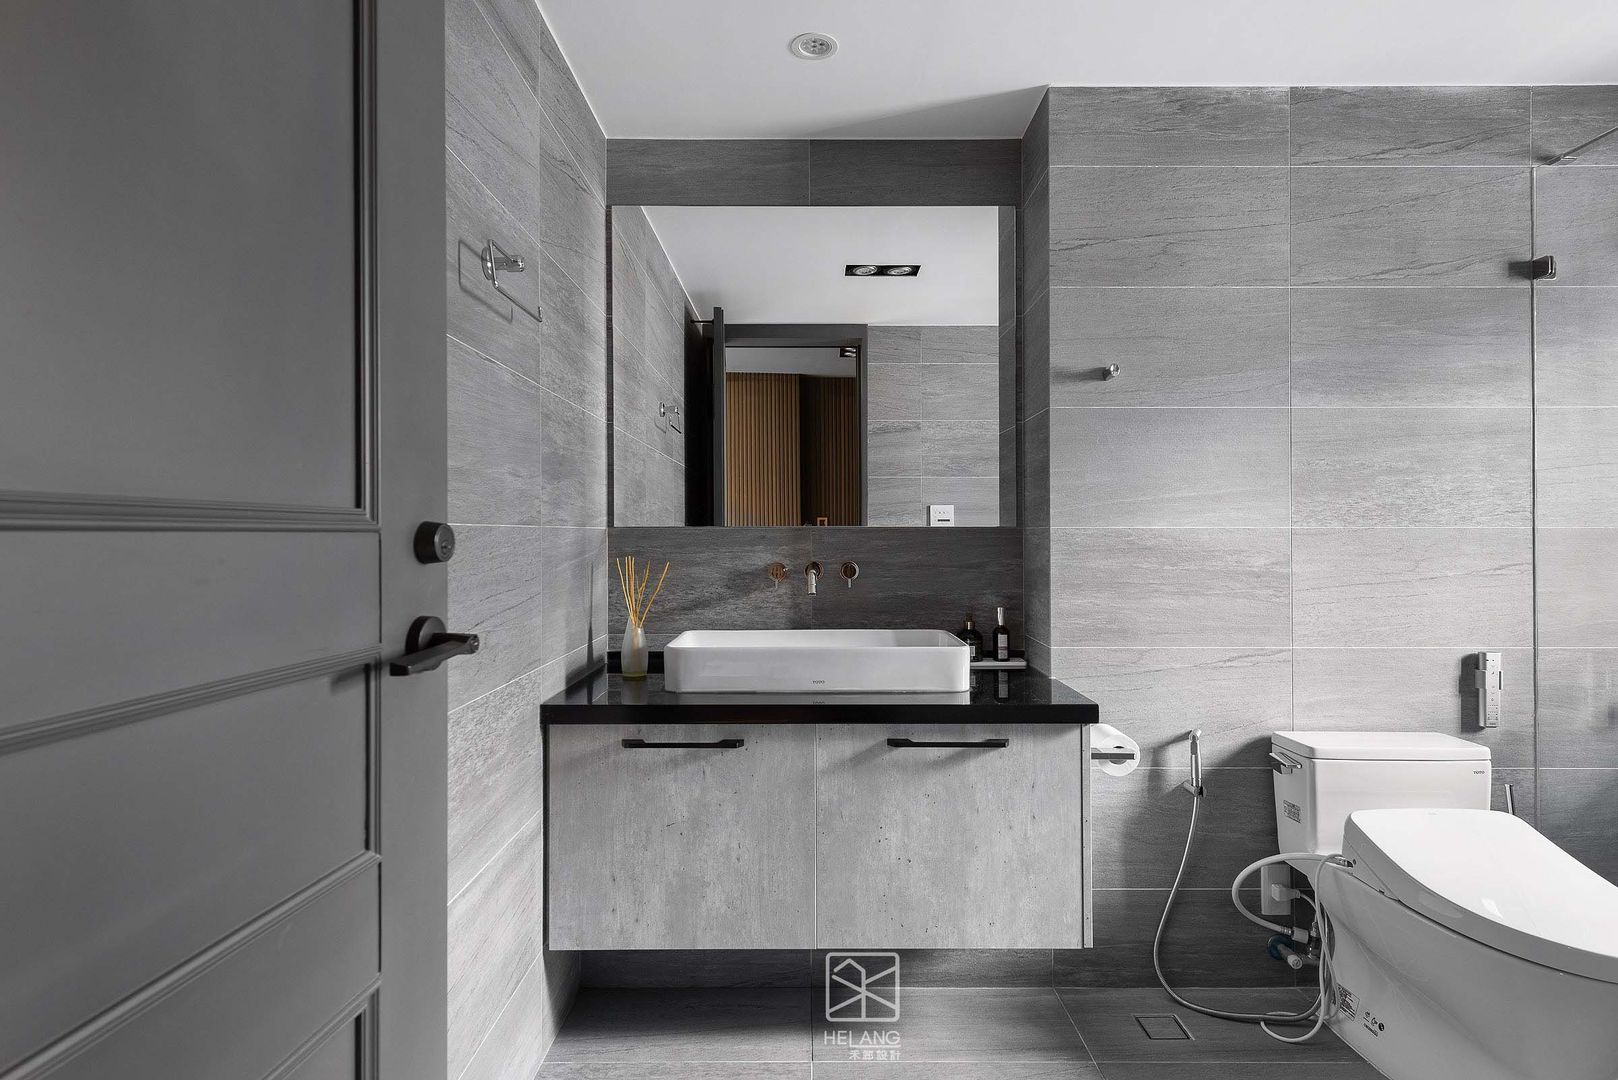 客浴 禾廊室內設計 浴室 镜子,轻敲,下沉,建筑,白色的,水暖夹具,夹具,黑色的,浴室水槽,浴室